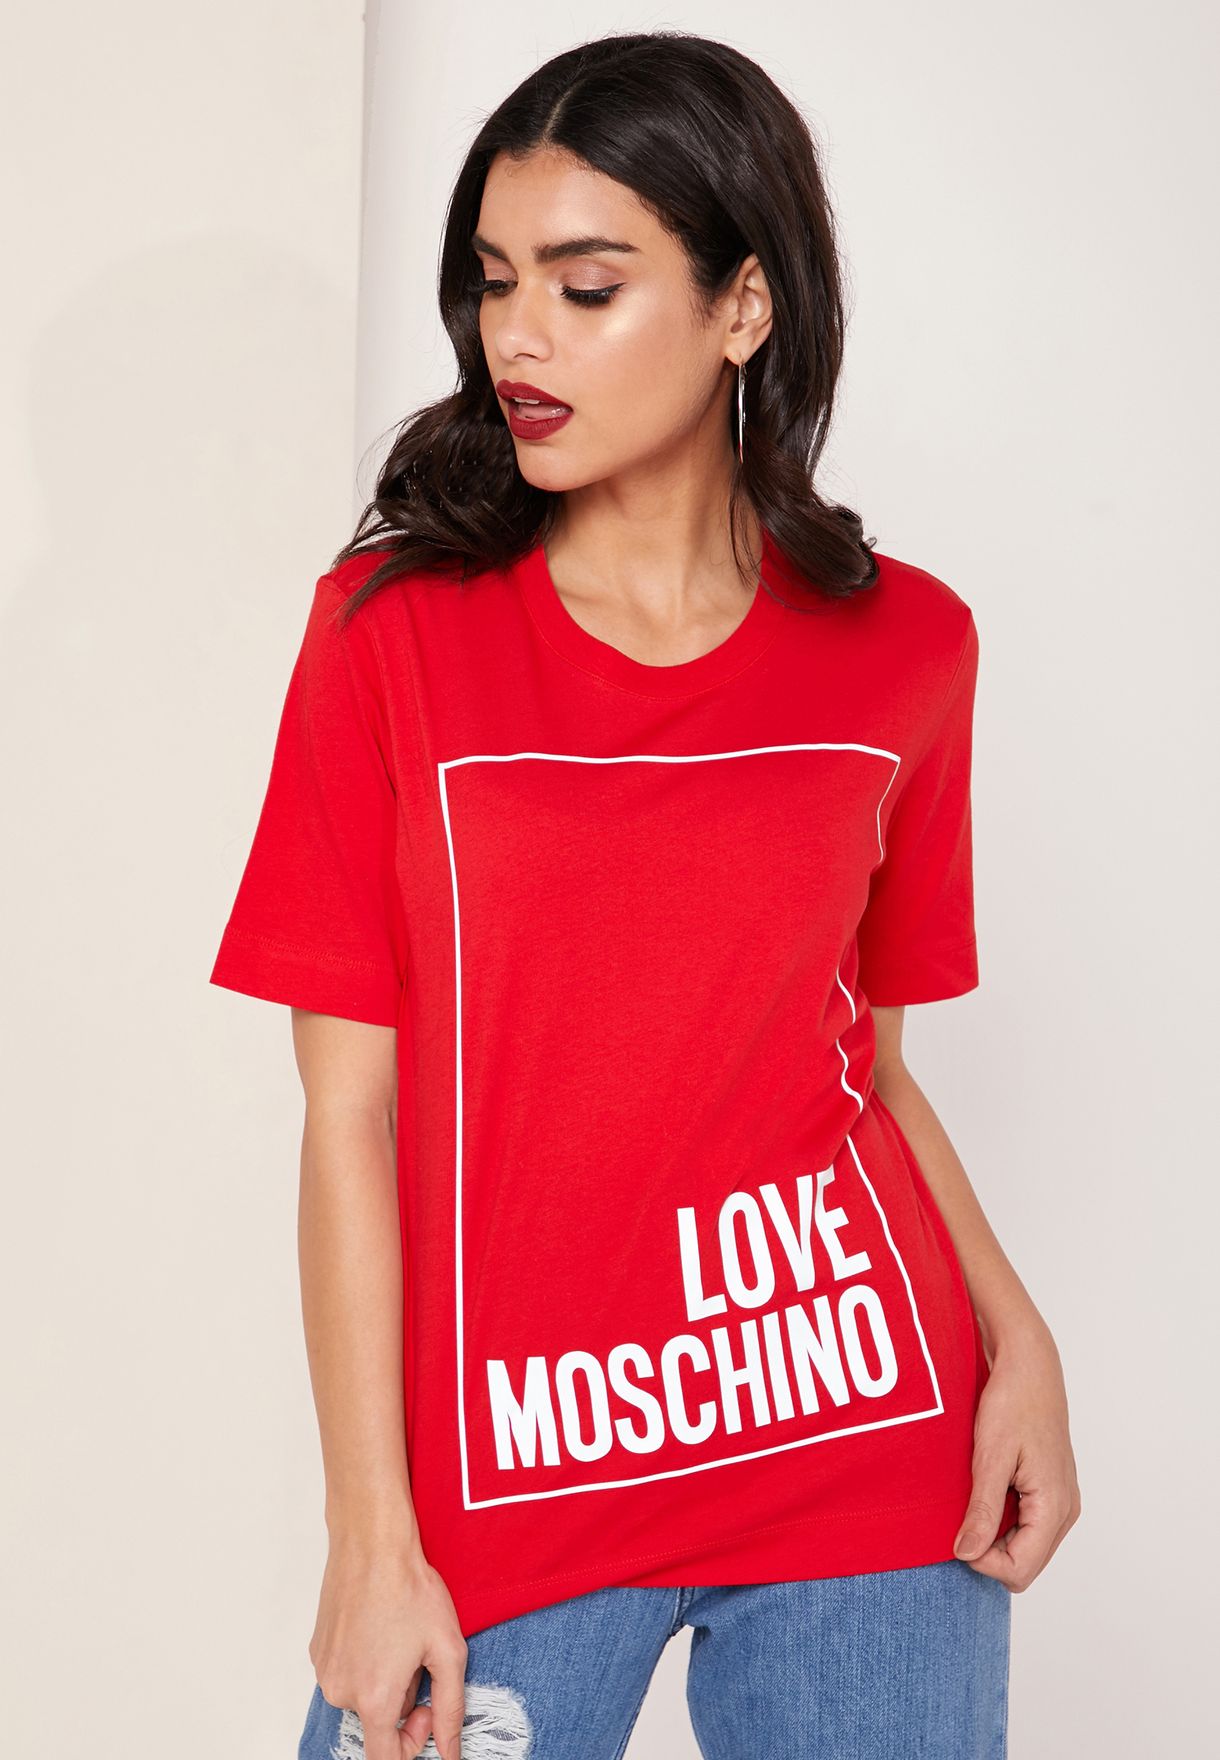 love moschino t shirt women's